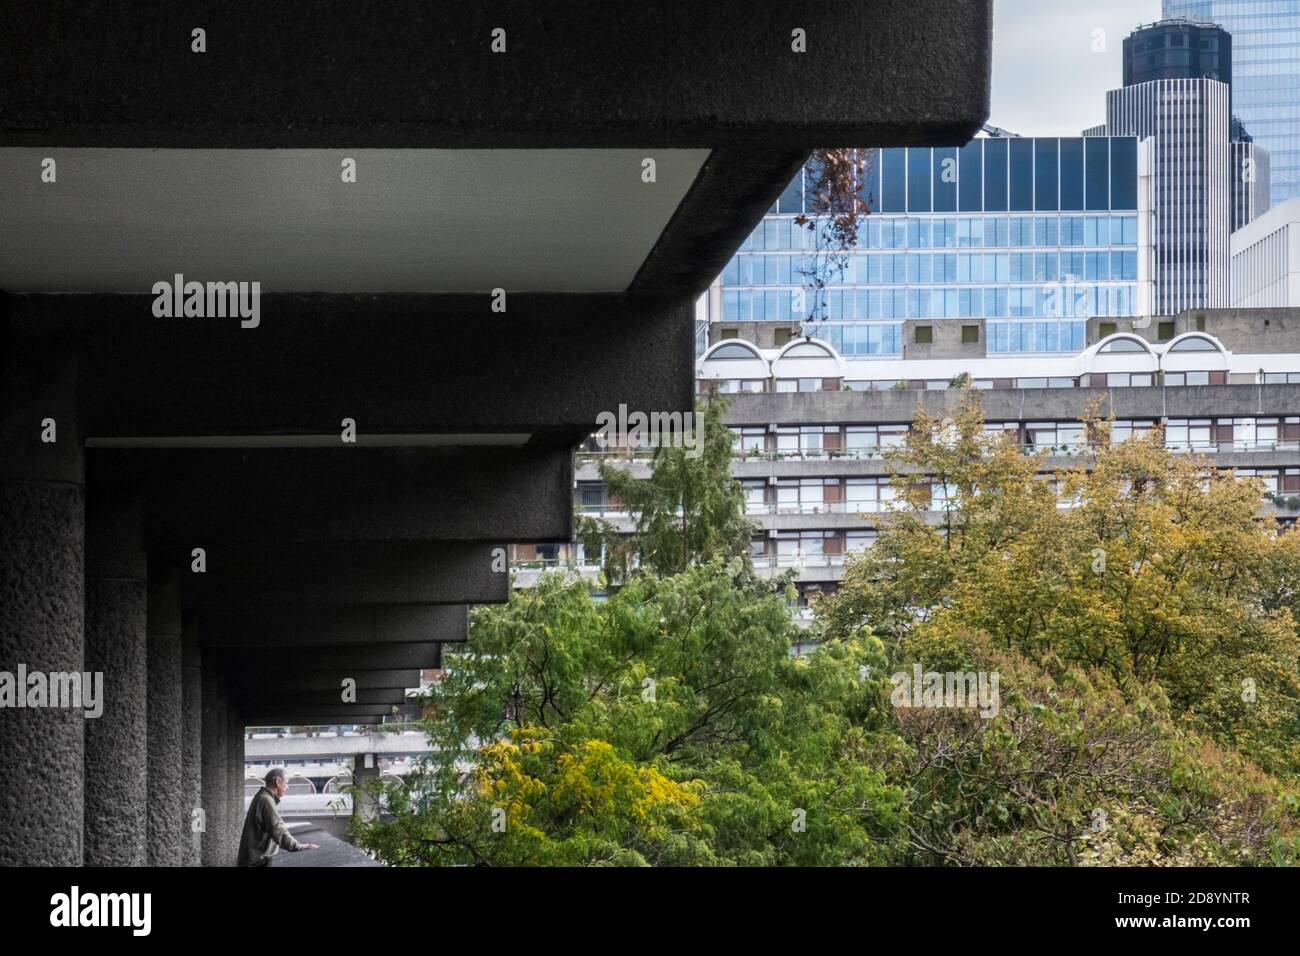 Royaume-Uni, Londres. Architecture brutaliste moderniste dans le complexe résidentiel Barbican Estate, architectes : Chamberlin, Powell et bon, ont terminé les années 1970 Banque D'Images